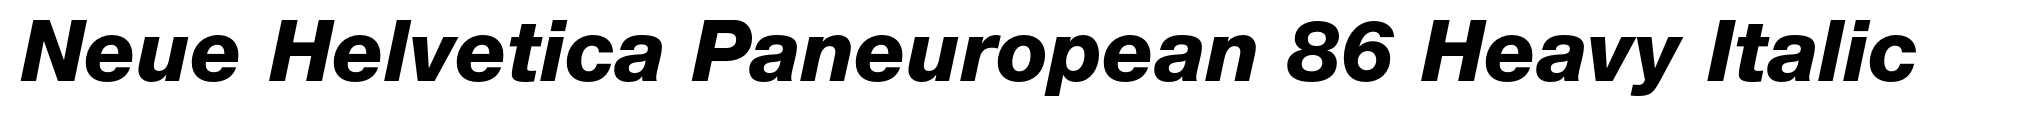 Neue Helvetica Paneuropean 86 Heavy Italic image